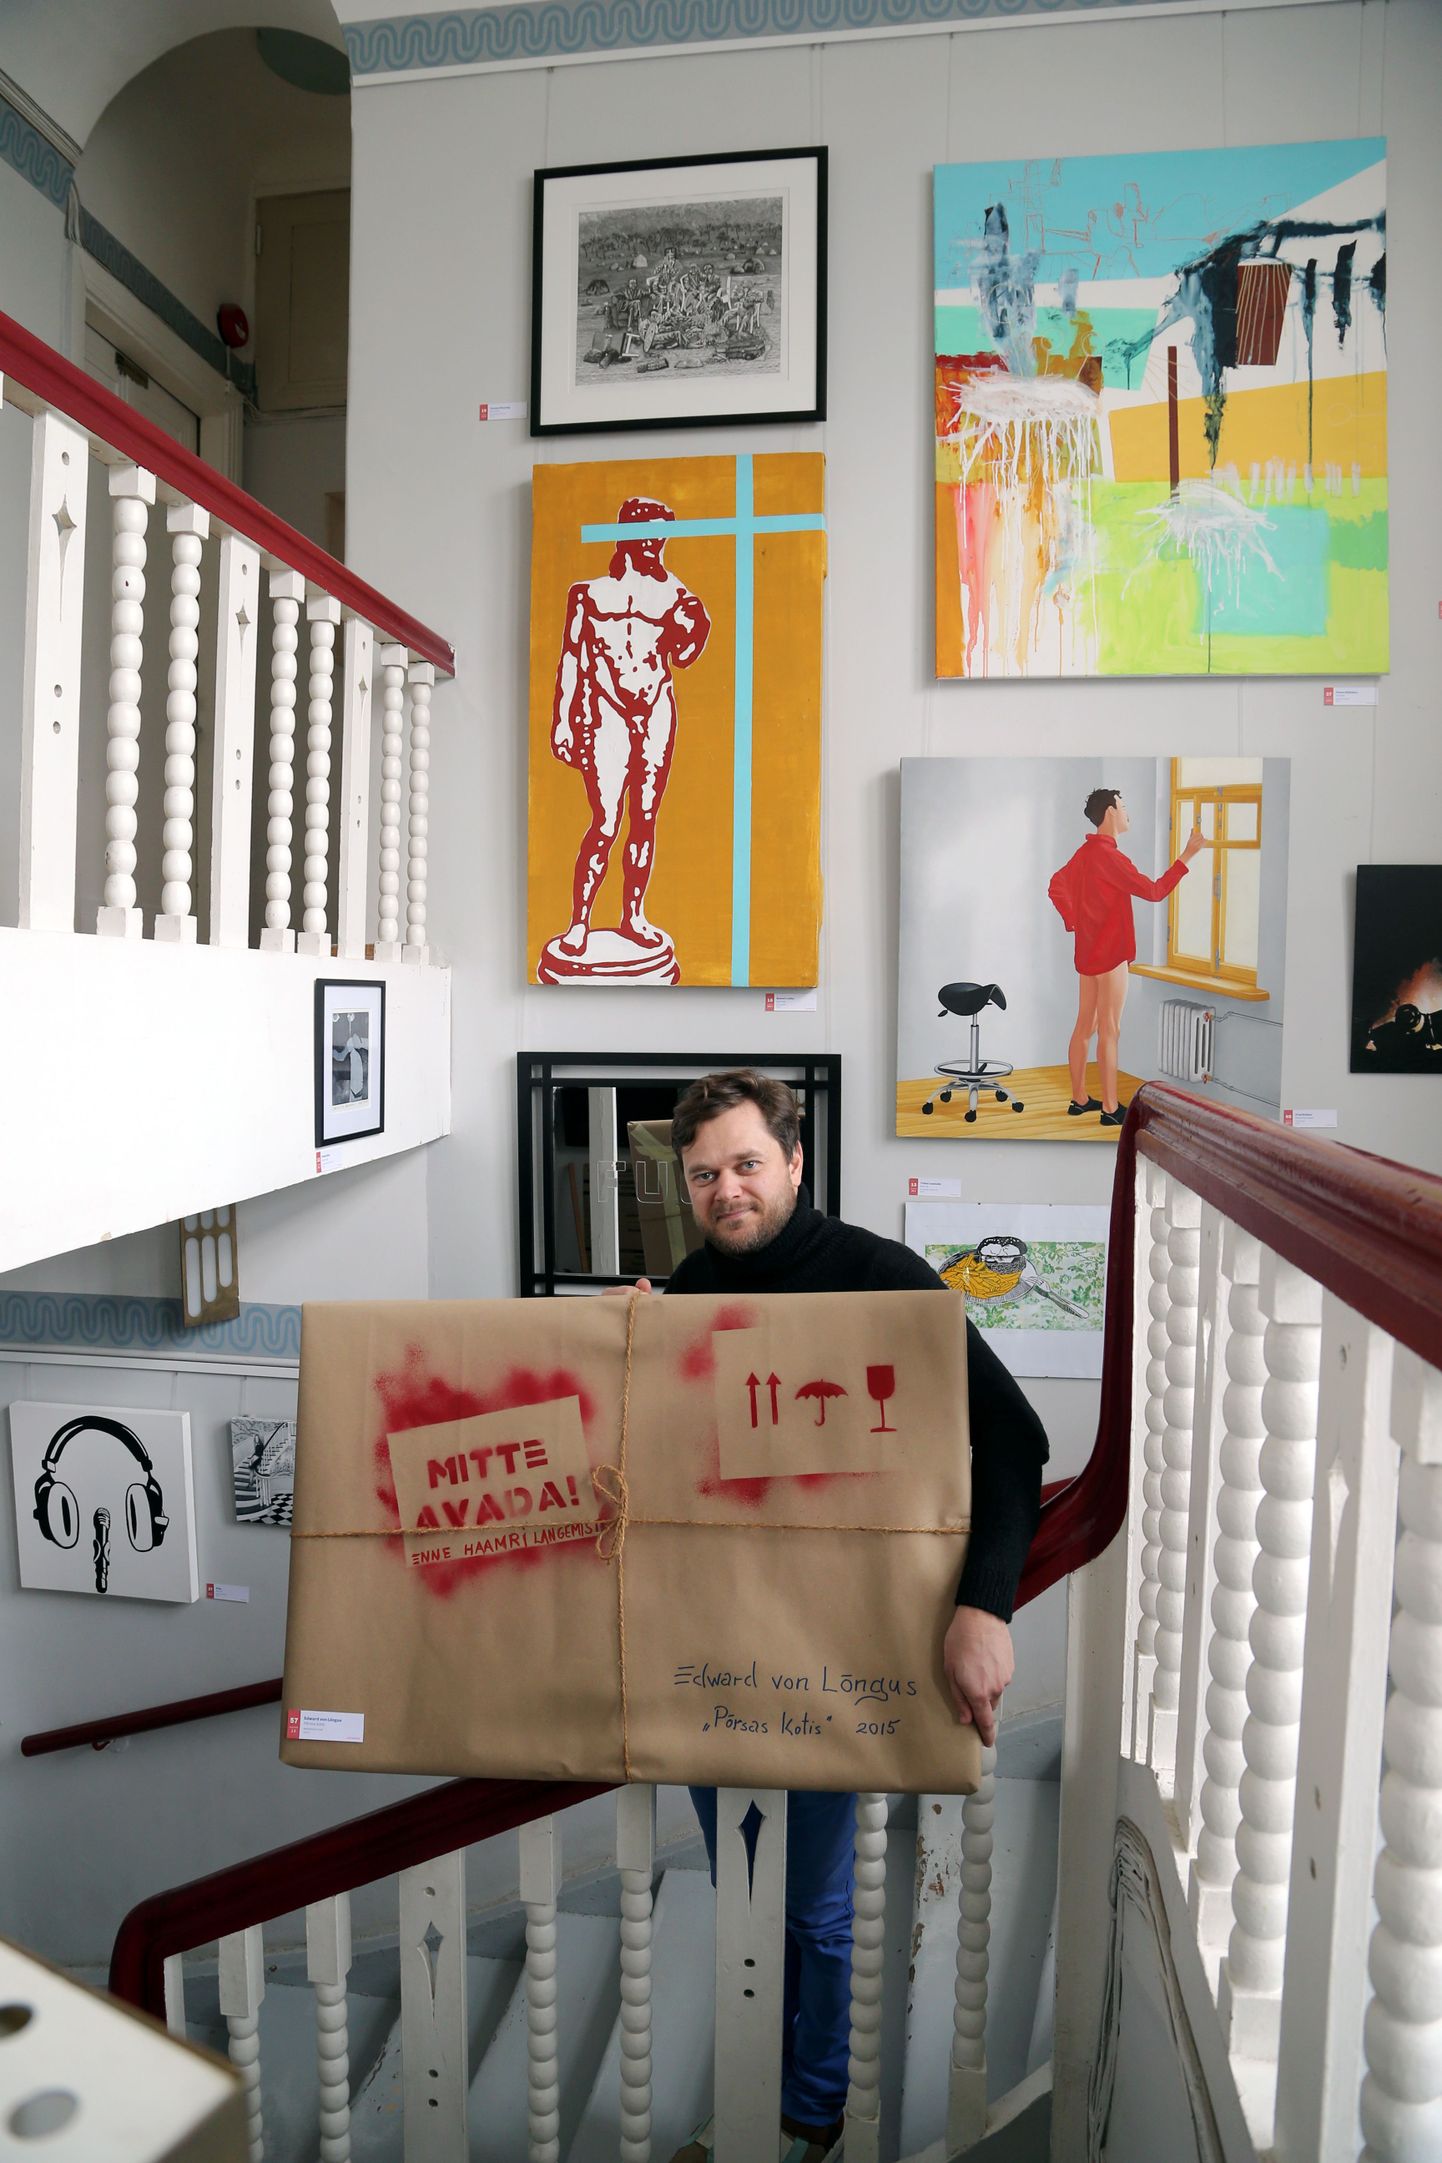 Tartu loomemajanduskeskuse juht Reigo Kuivjõgi näitas keskuse trepigaleriis oksjonitööde näitusel teiste teoste hulgas eelpakitud maali «Põrsas kotis», mille autor on Edward von Lõngus.